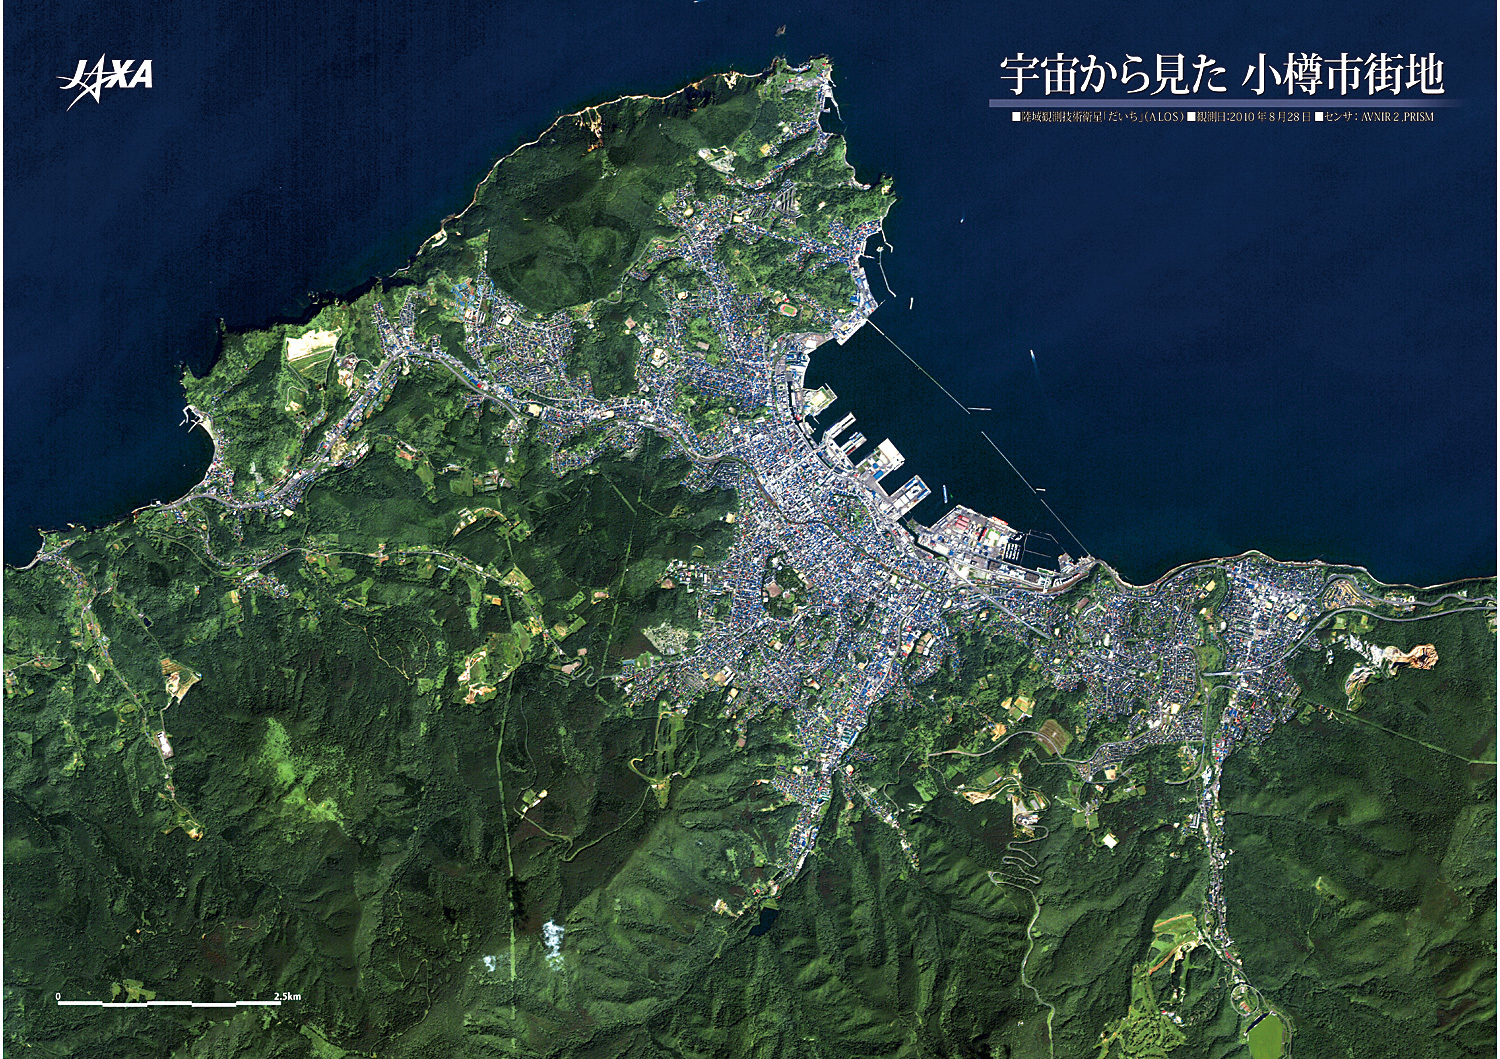 だいちから見た日本の都市 小樽市街地 :衛星画像（ポスター仕上げ）